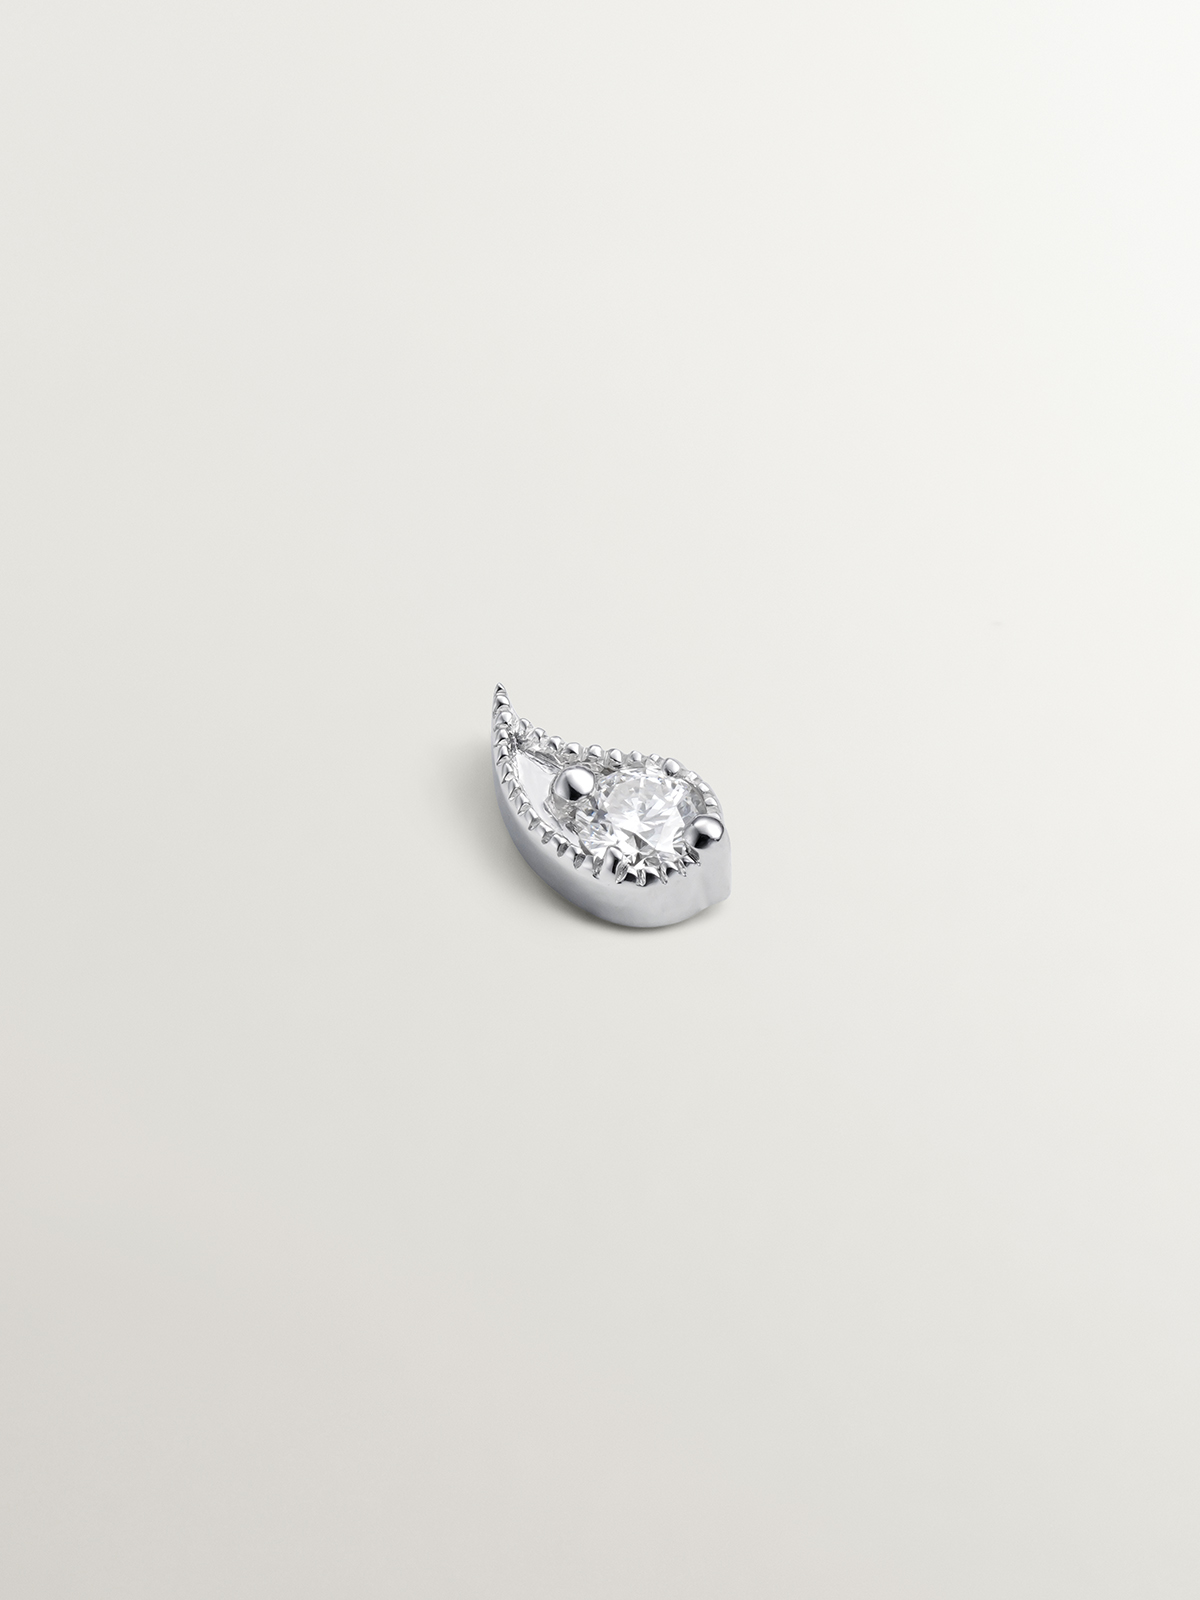 Piercing en or blanc 18K avec des diamants et en forme de goutte.